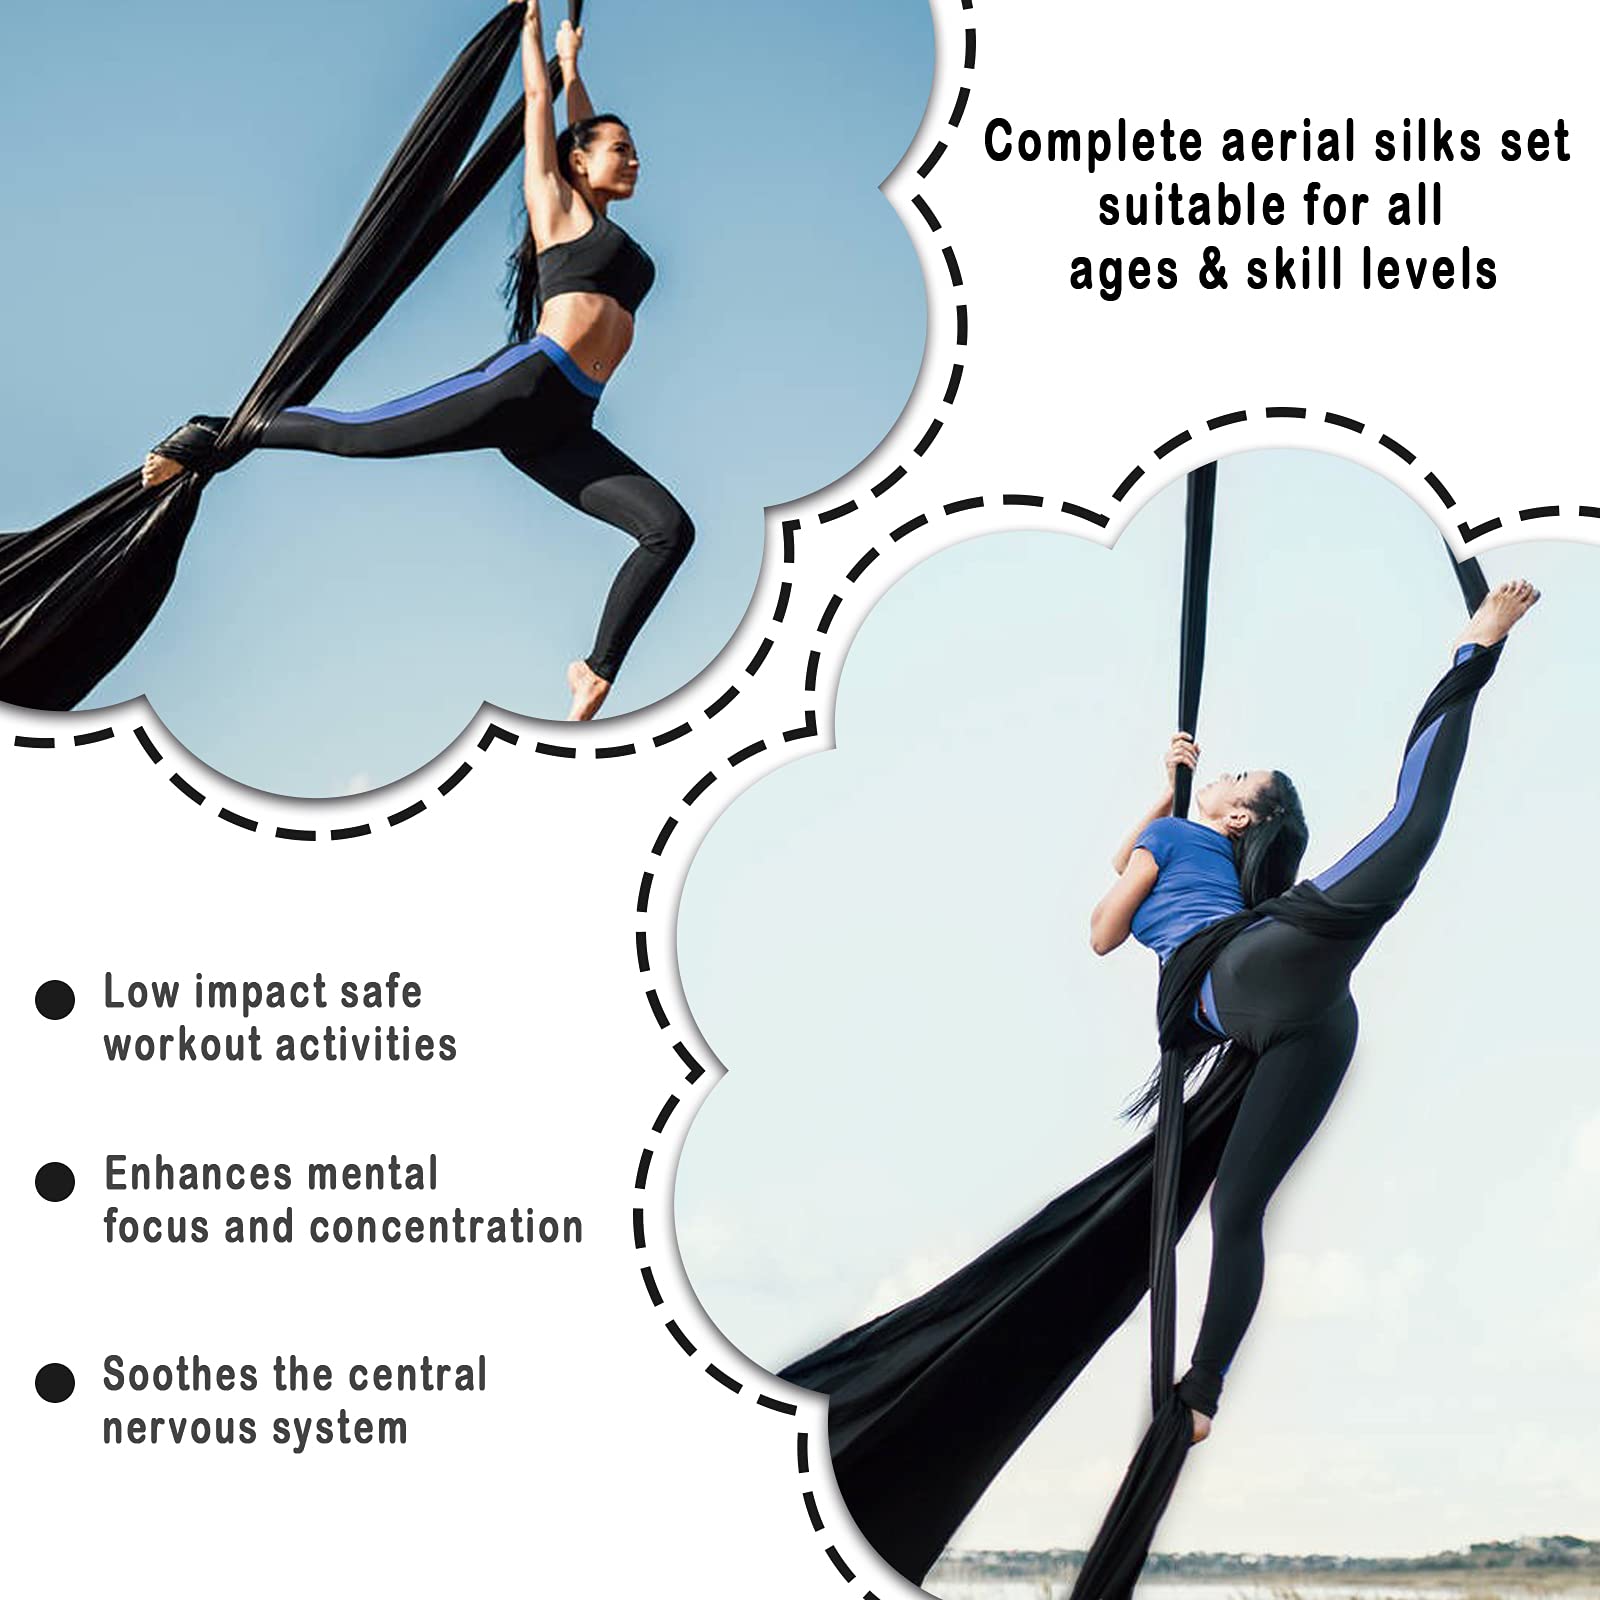 WWahuayuan 10M Premium Aerial Silks Equipment Yoga Pilates Swing Aerial Yoga Antigravity Hammock Trapeze for Acrobatic Dance,Air Yoga, Aerial Yoga Hammock